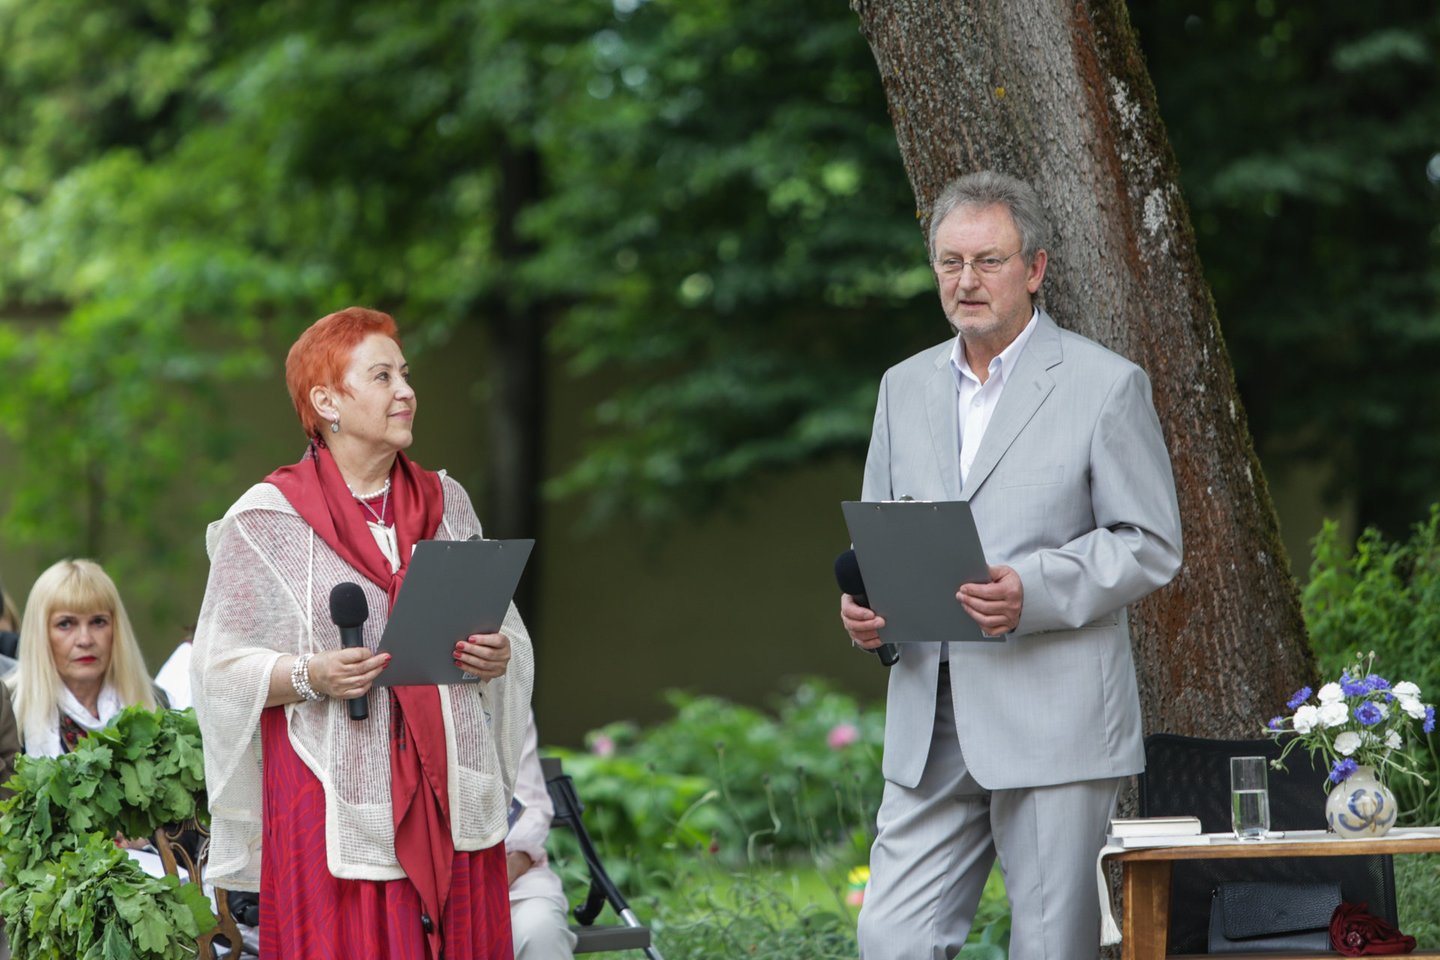  Kauno Maironio muziejaus sodelyje įvyko šių metų „Poezijos pavasario“ laureato A.Grybausko vainikavimo ceremonija.<br>G.Bitvinsko nuotr.